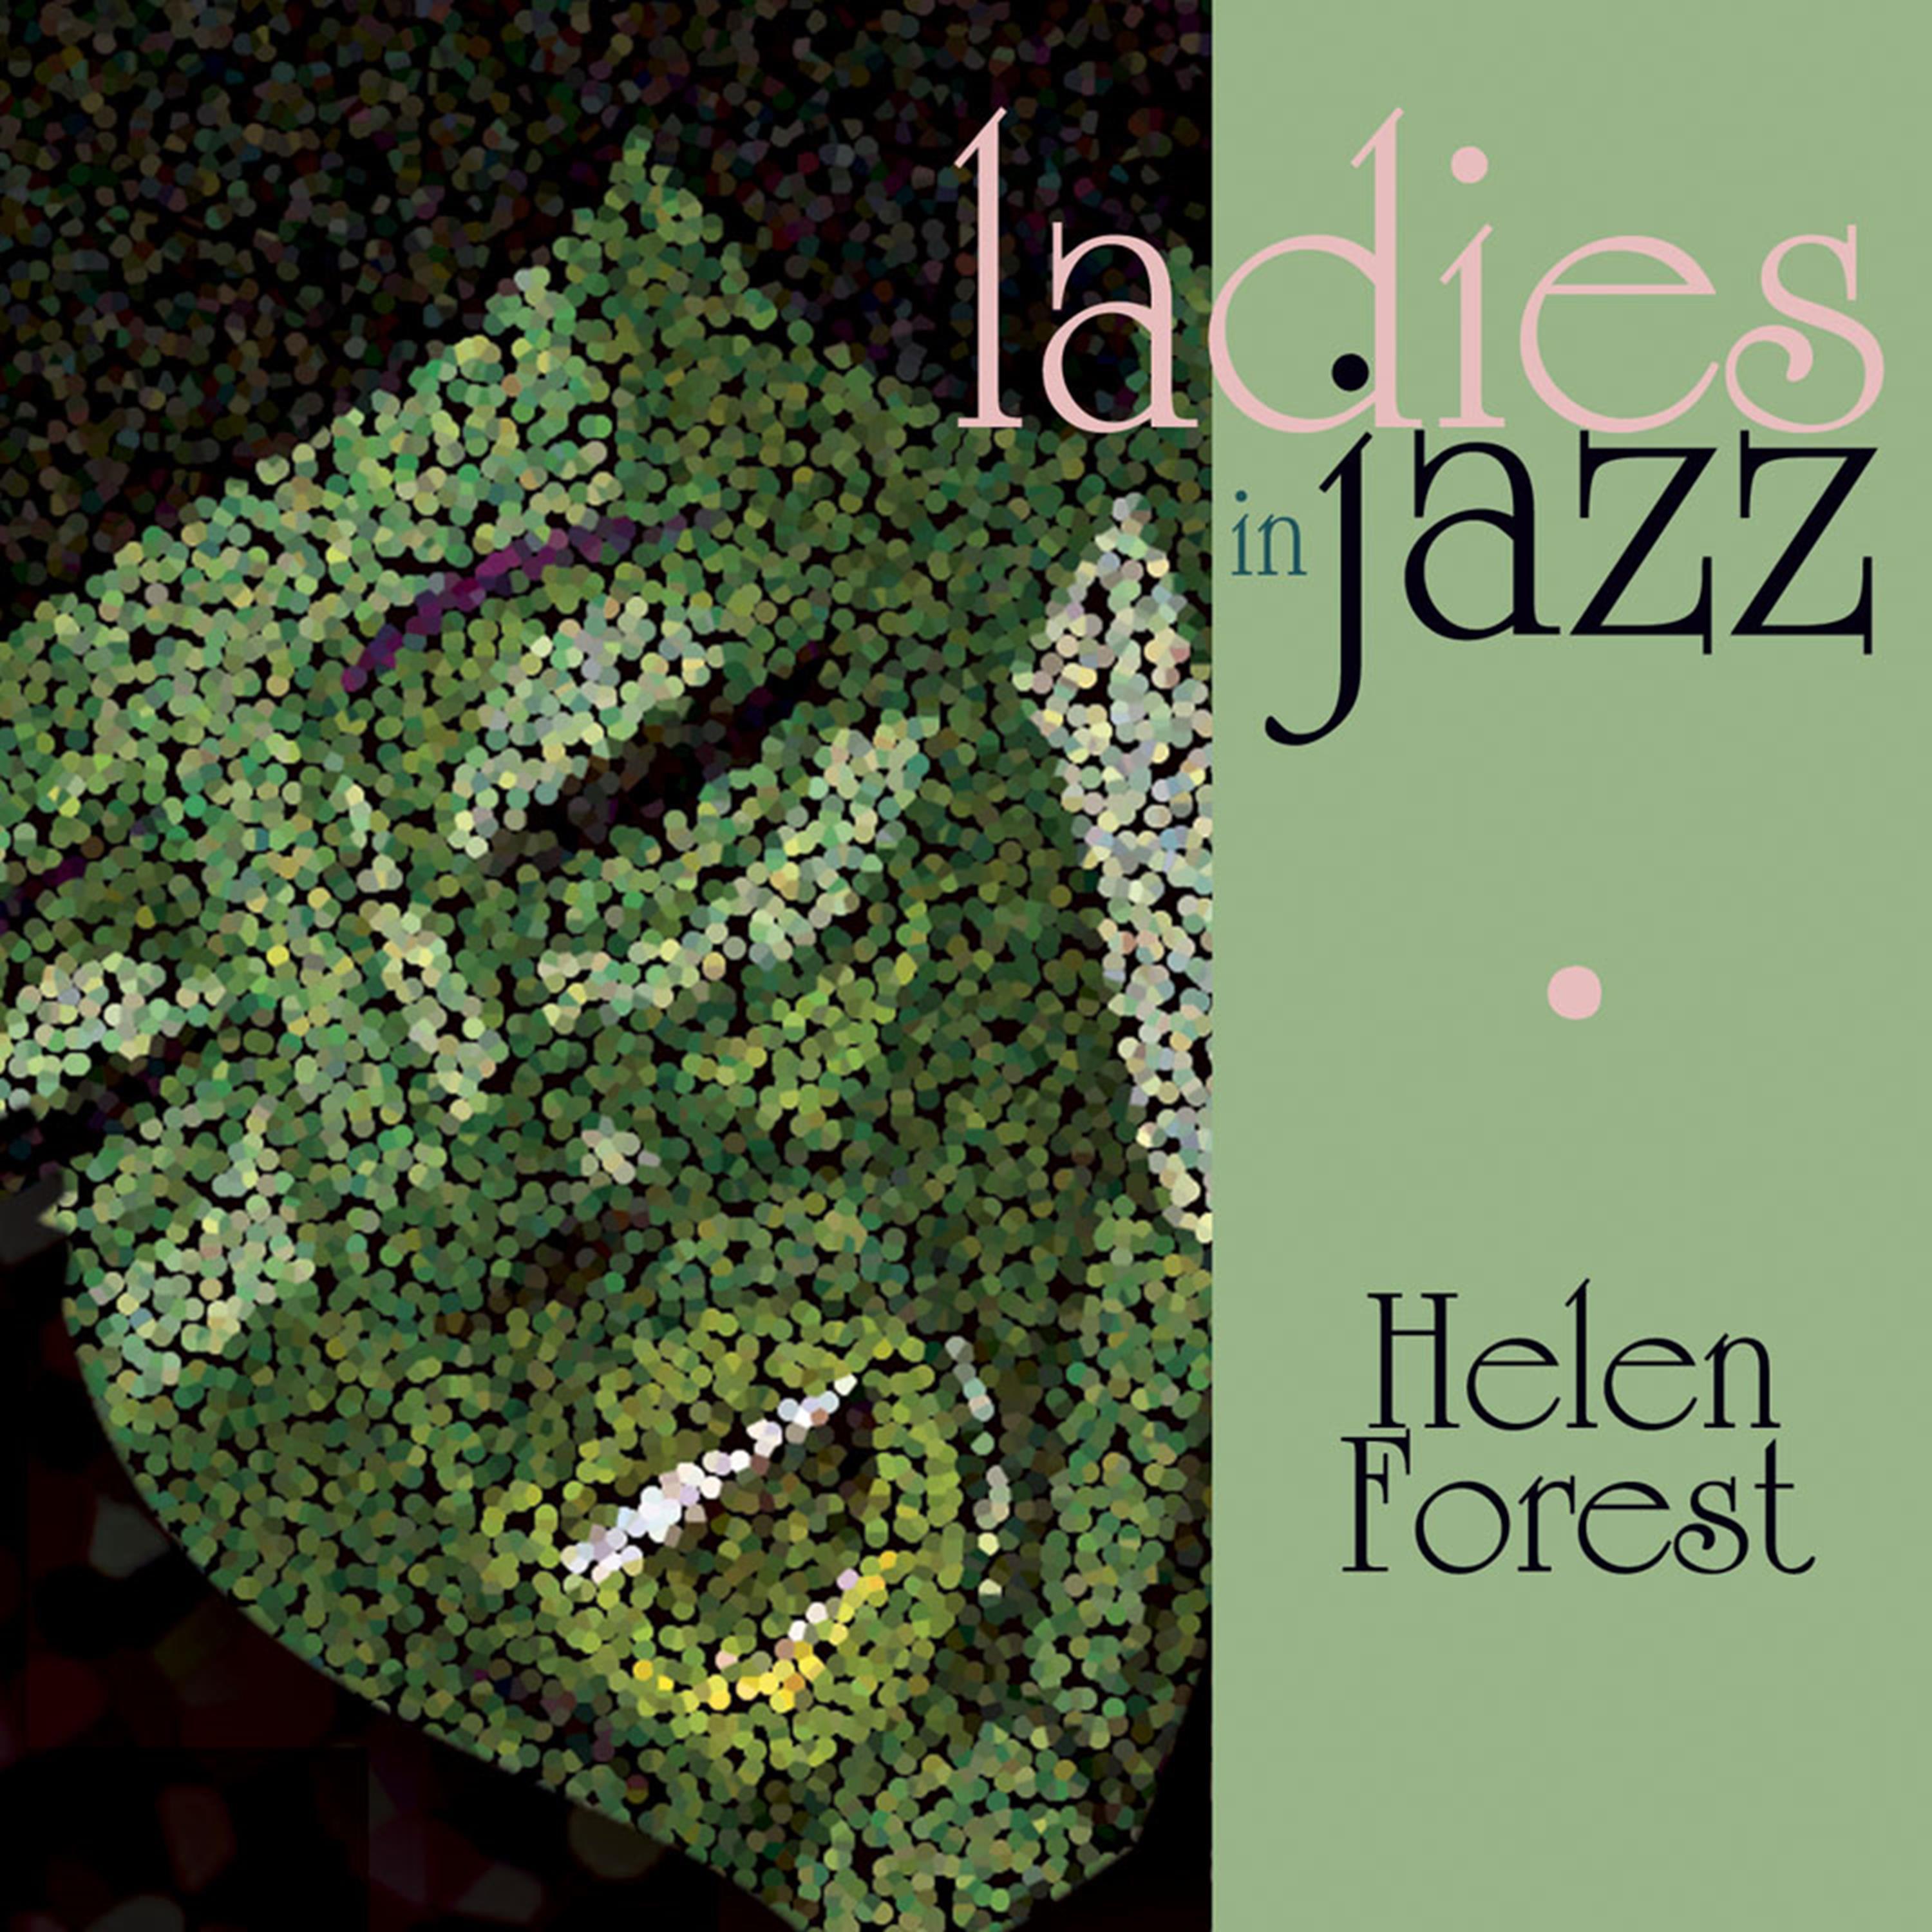 Ladies in Jazz - Helen Forrest